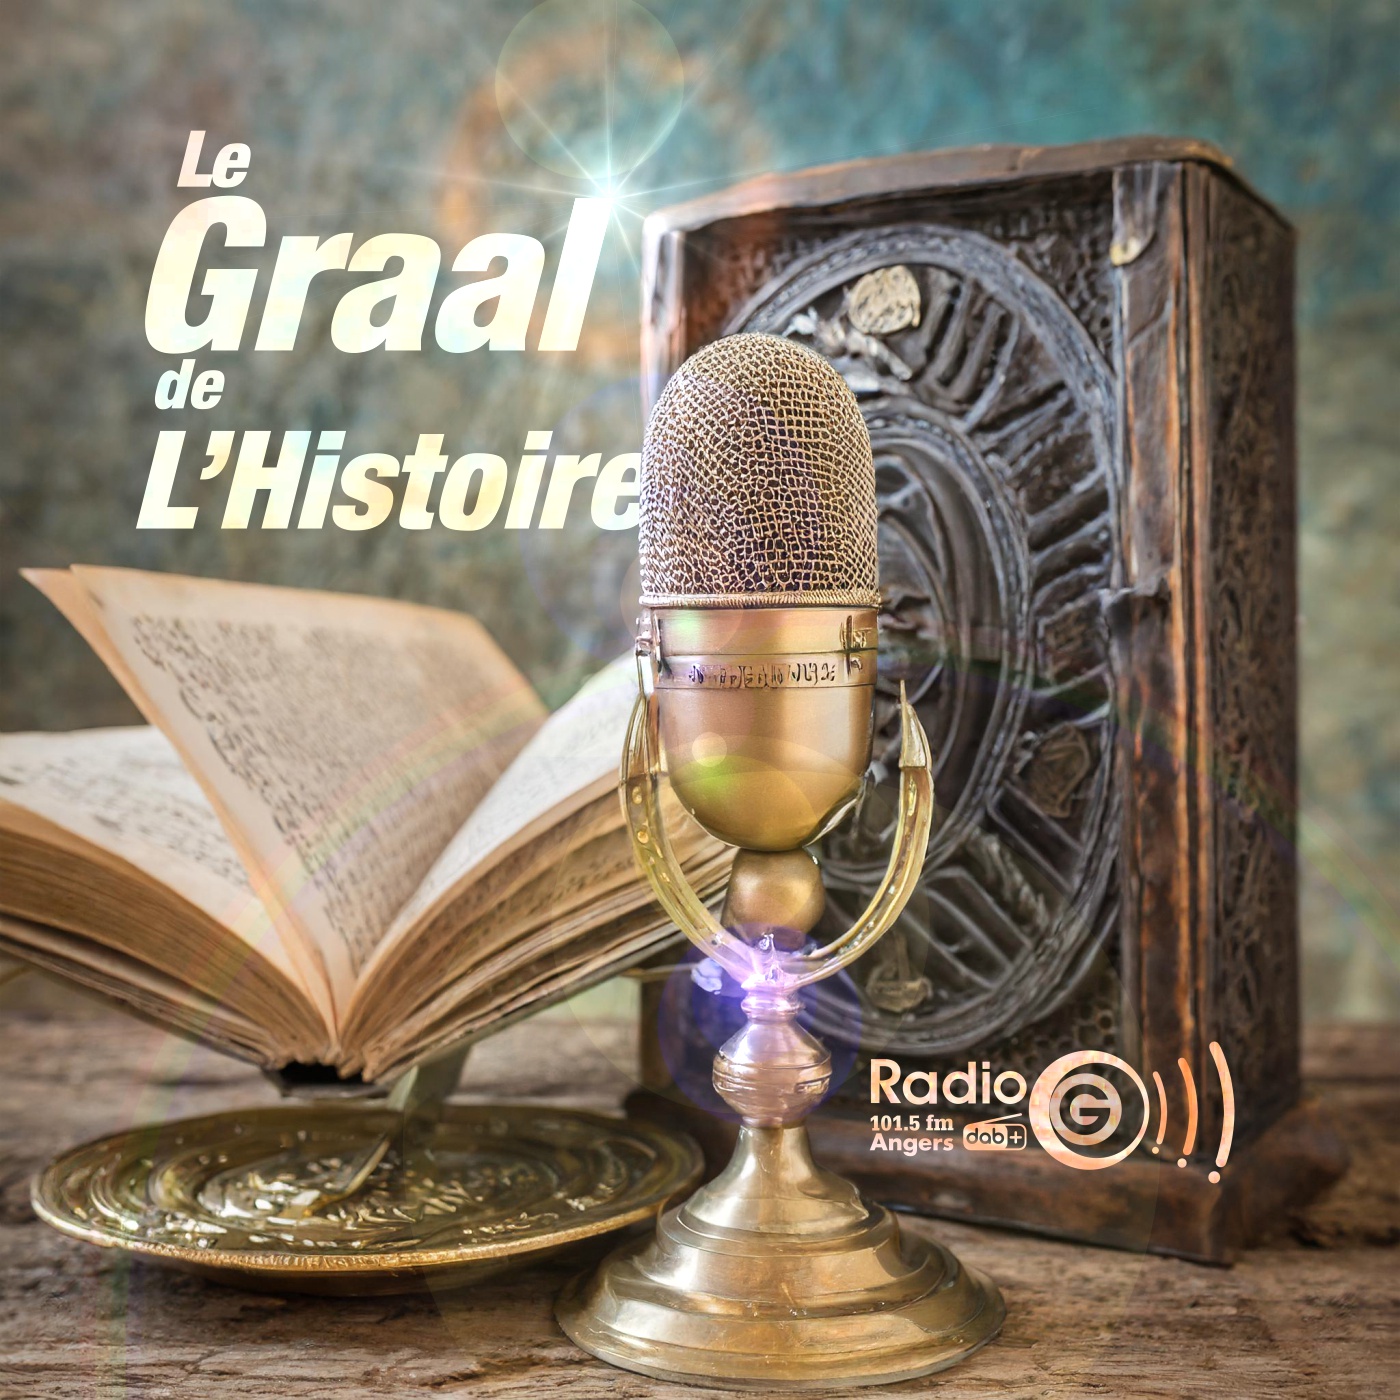 Graalv3 1 La fuite Le Graal de l'Histoire, un podcast avec des voix et des musiques en intelligence artificielles Graalv3 1 La fuite